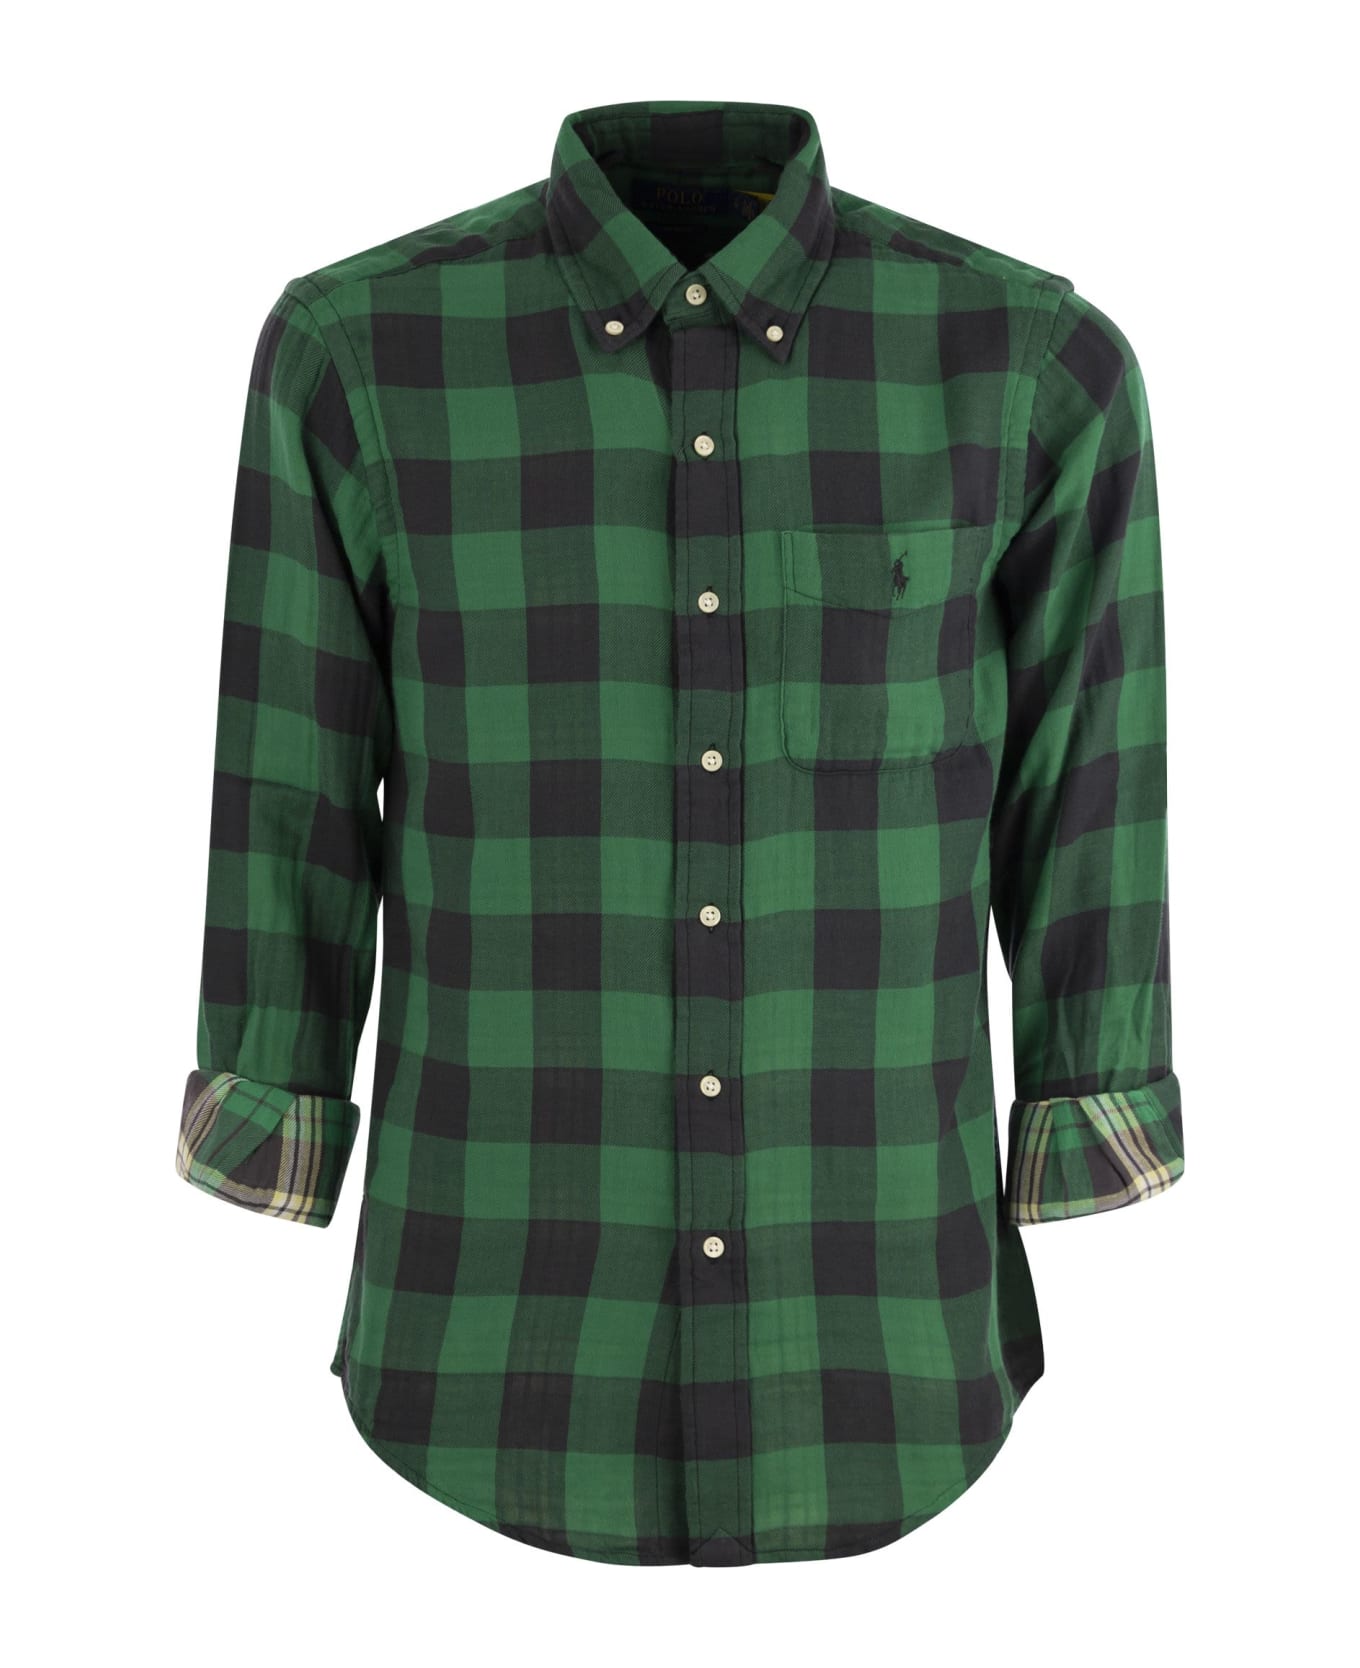 Polo Ralph Lauren Shirt - Green/black